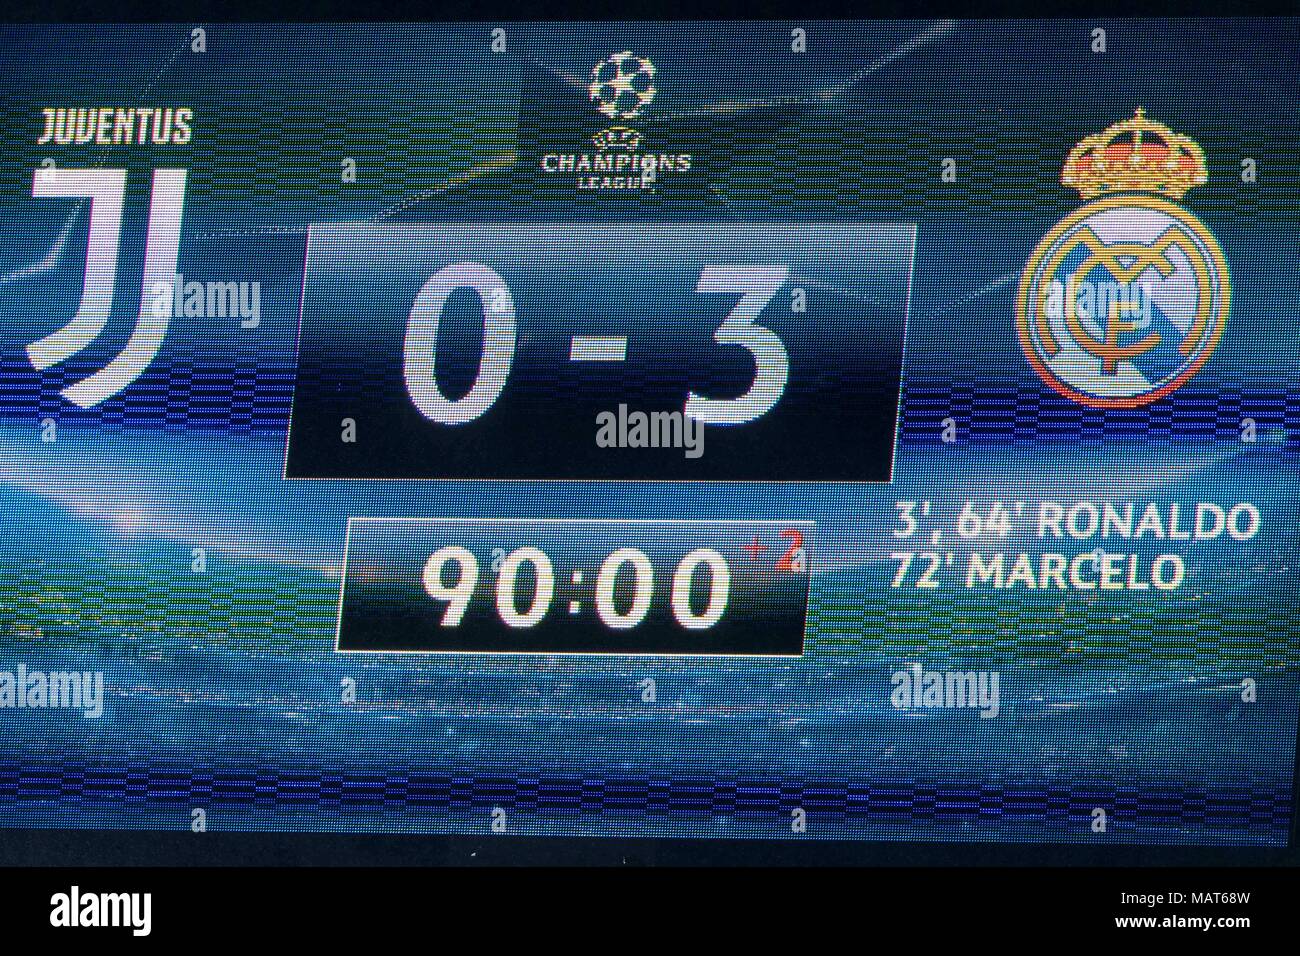 match between Juventus 0-3 Real Madrid 